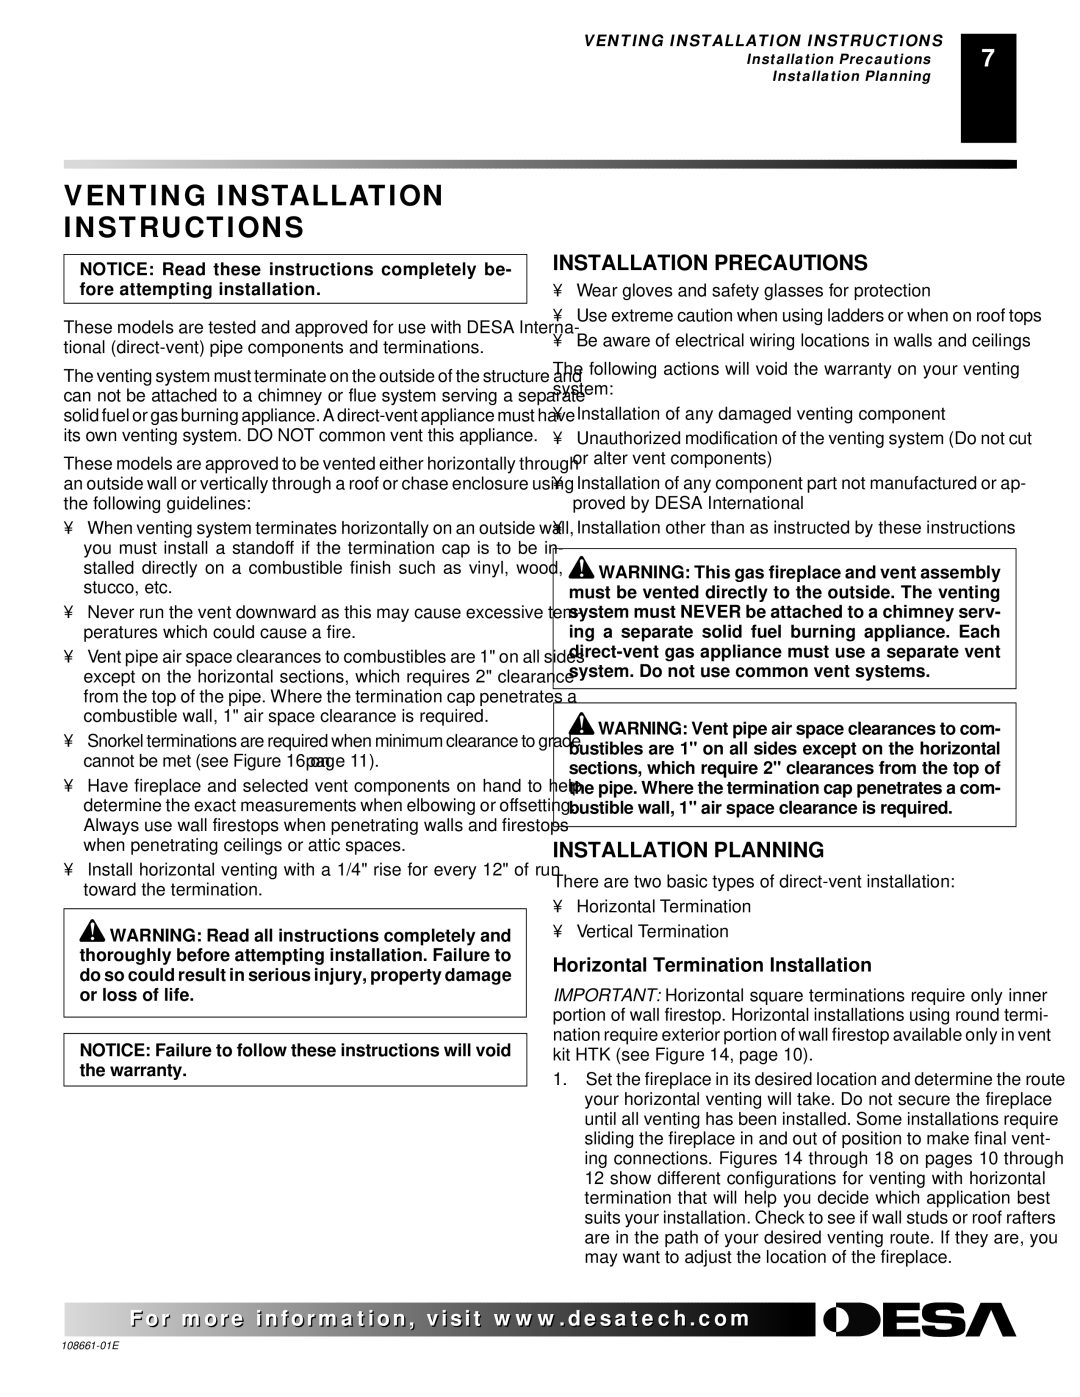 Desa (V)VC36N Series installation manual Venting Installation Instructions, Installation Precautions, Installation Planning 